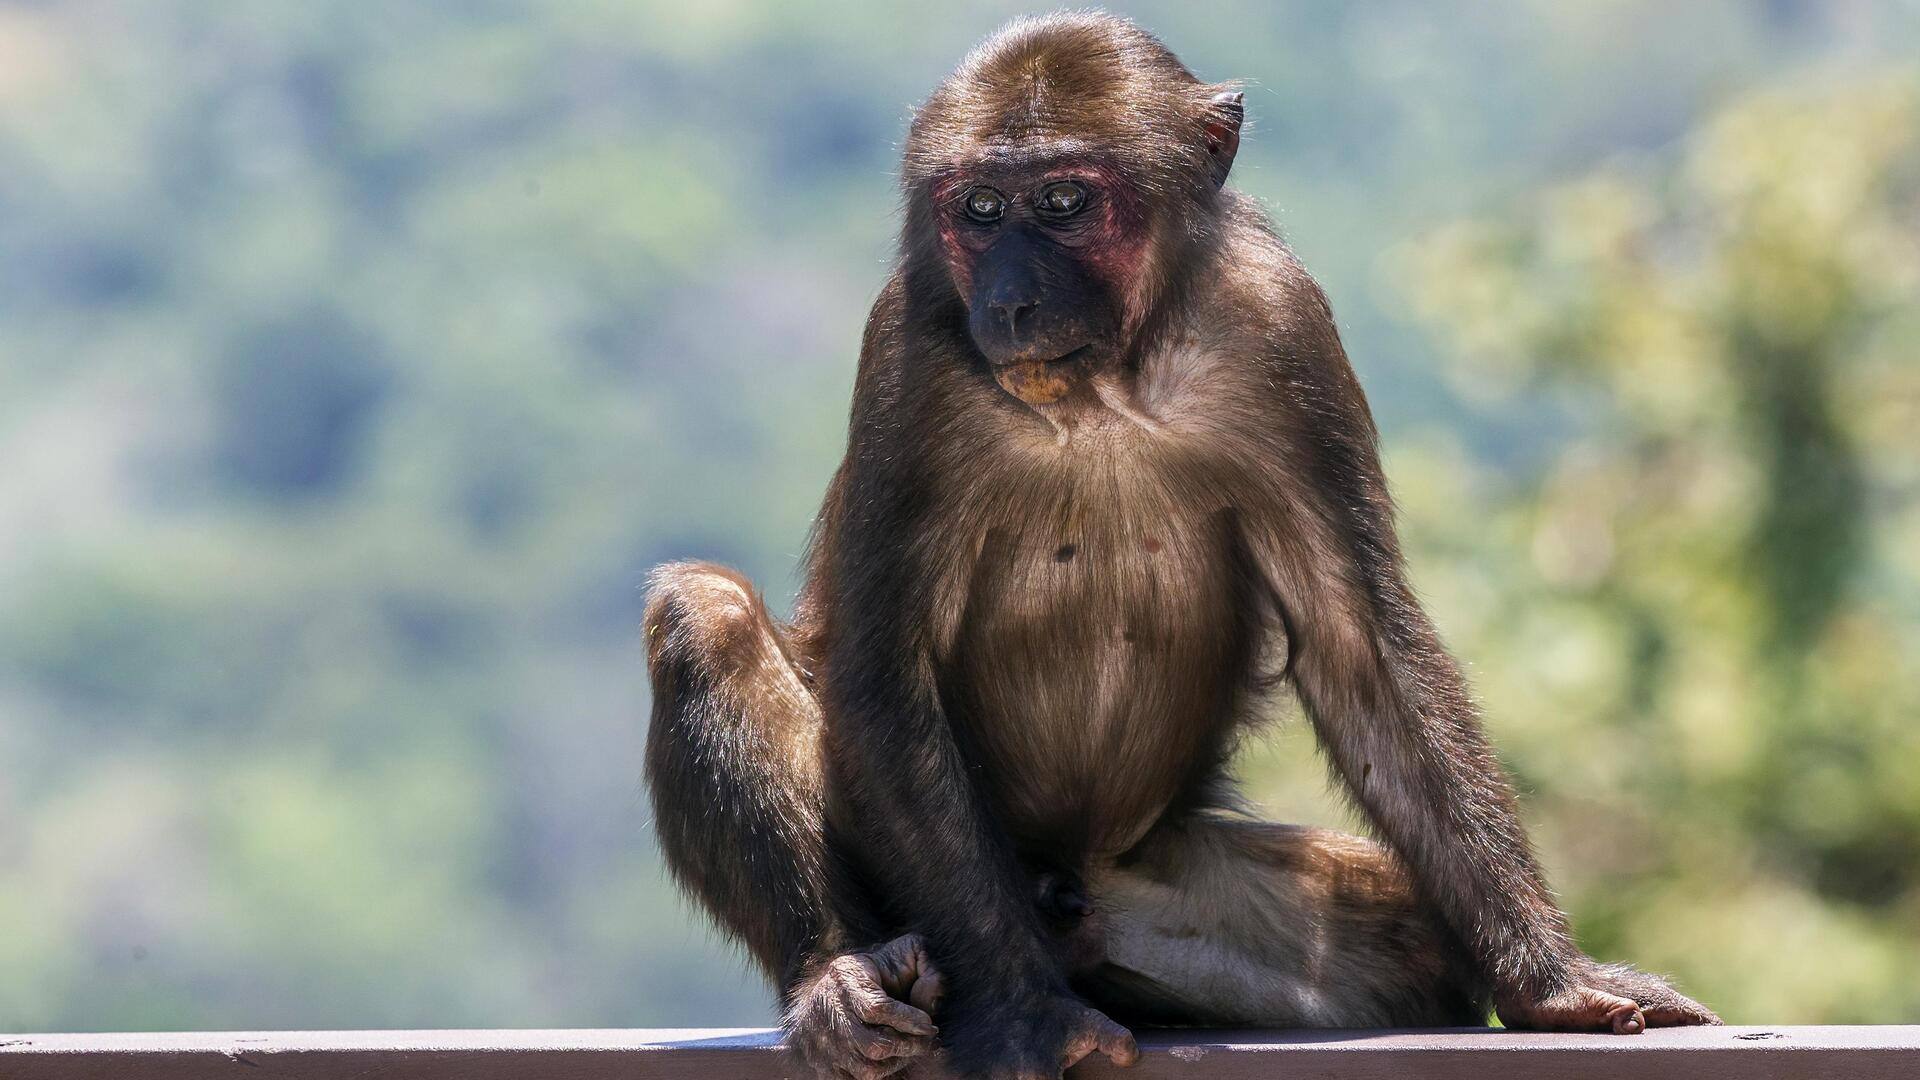 मध्य प्रदेश: पकड़ा गया 21,000 रुपये का इनामी 'मोस्ट वांटेड' बंदर, जानिए पूरा मामला